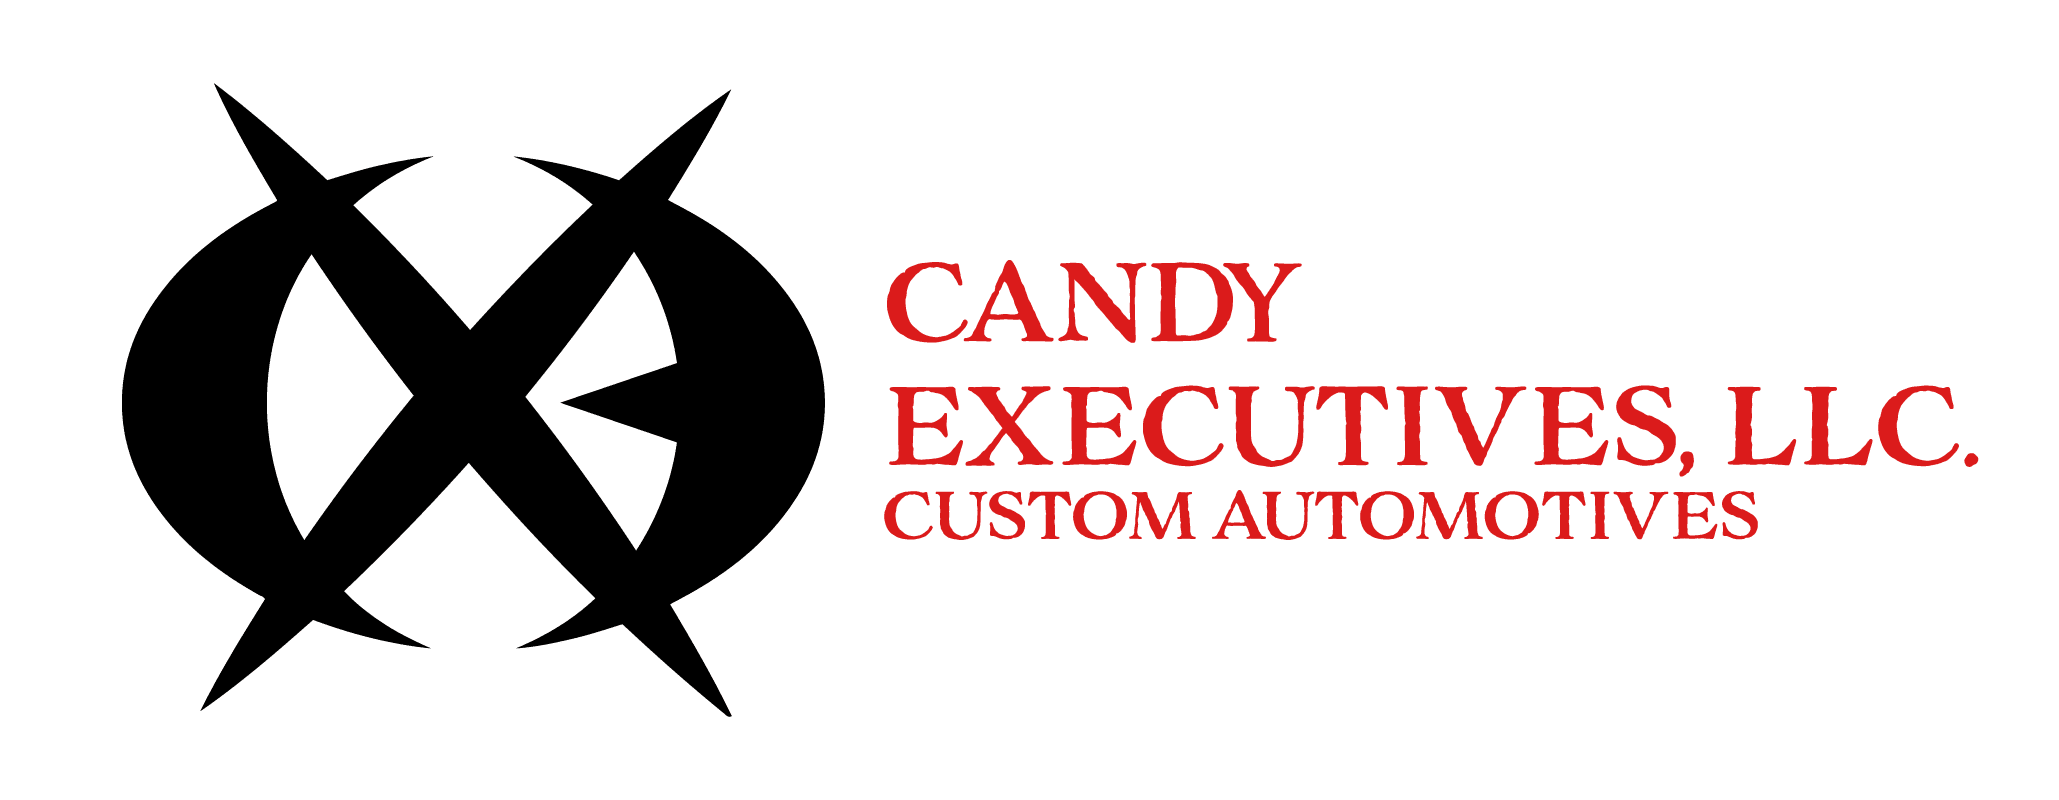 Candy Executives